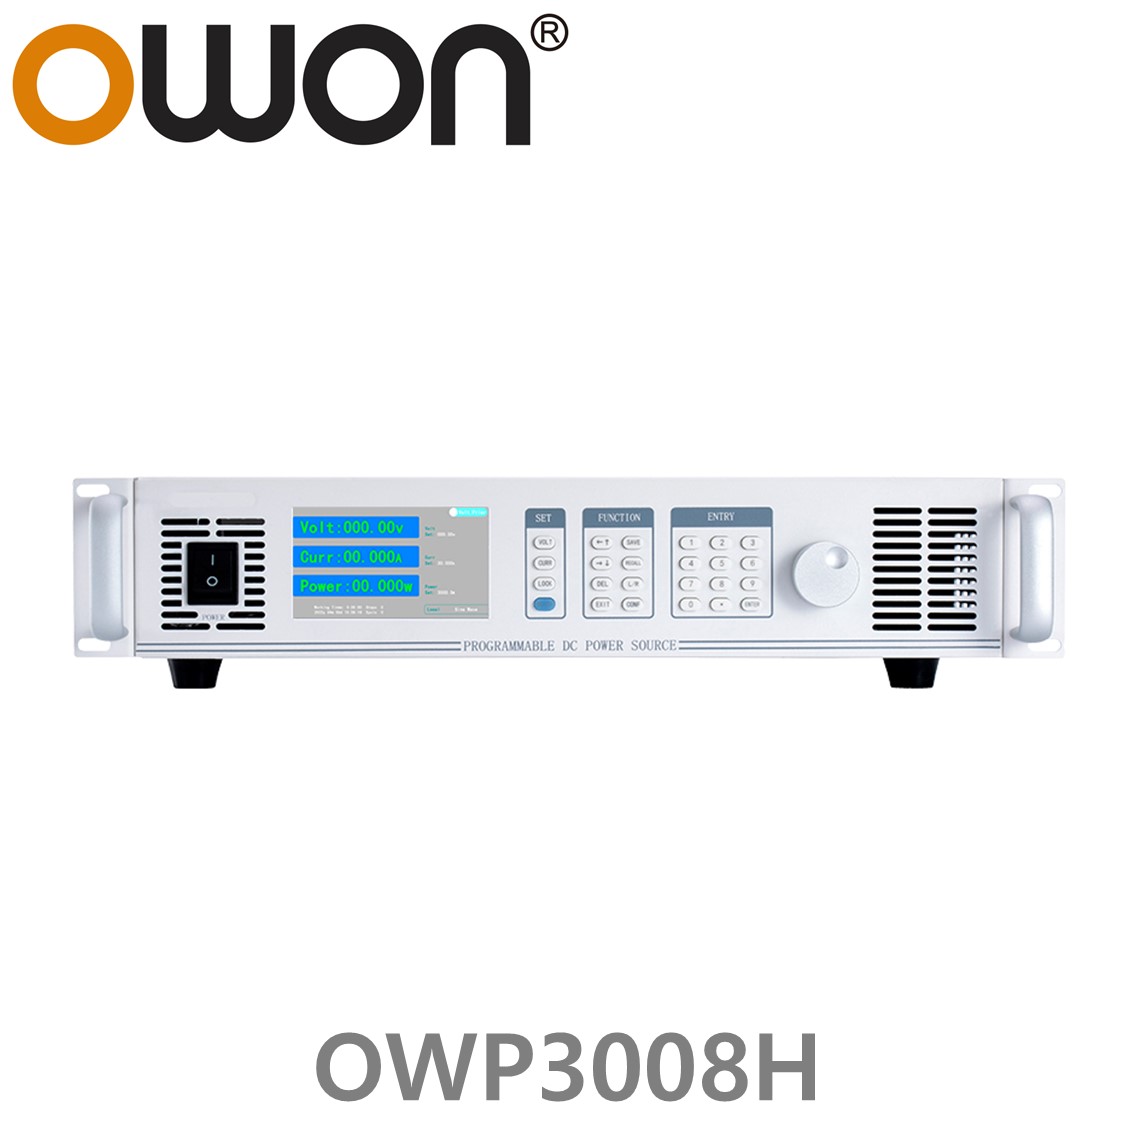 [ OWON ] OWP3008H 고전력 DC파워서플라이, 0-80.000V / 0-60.000A / 3000.0W DC전원공급장치